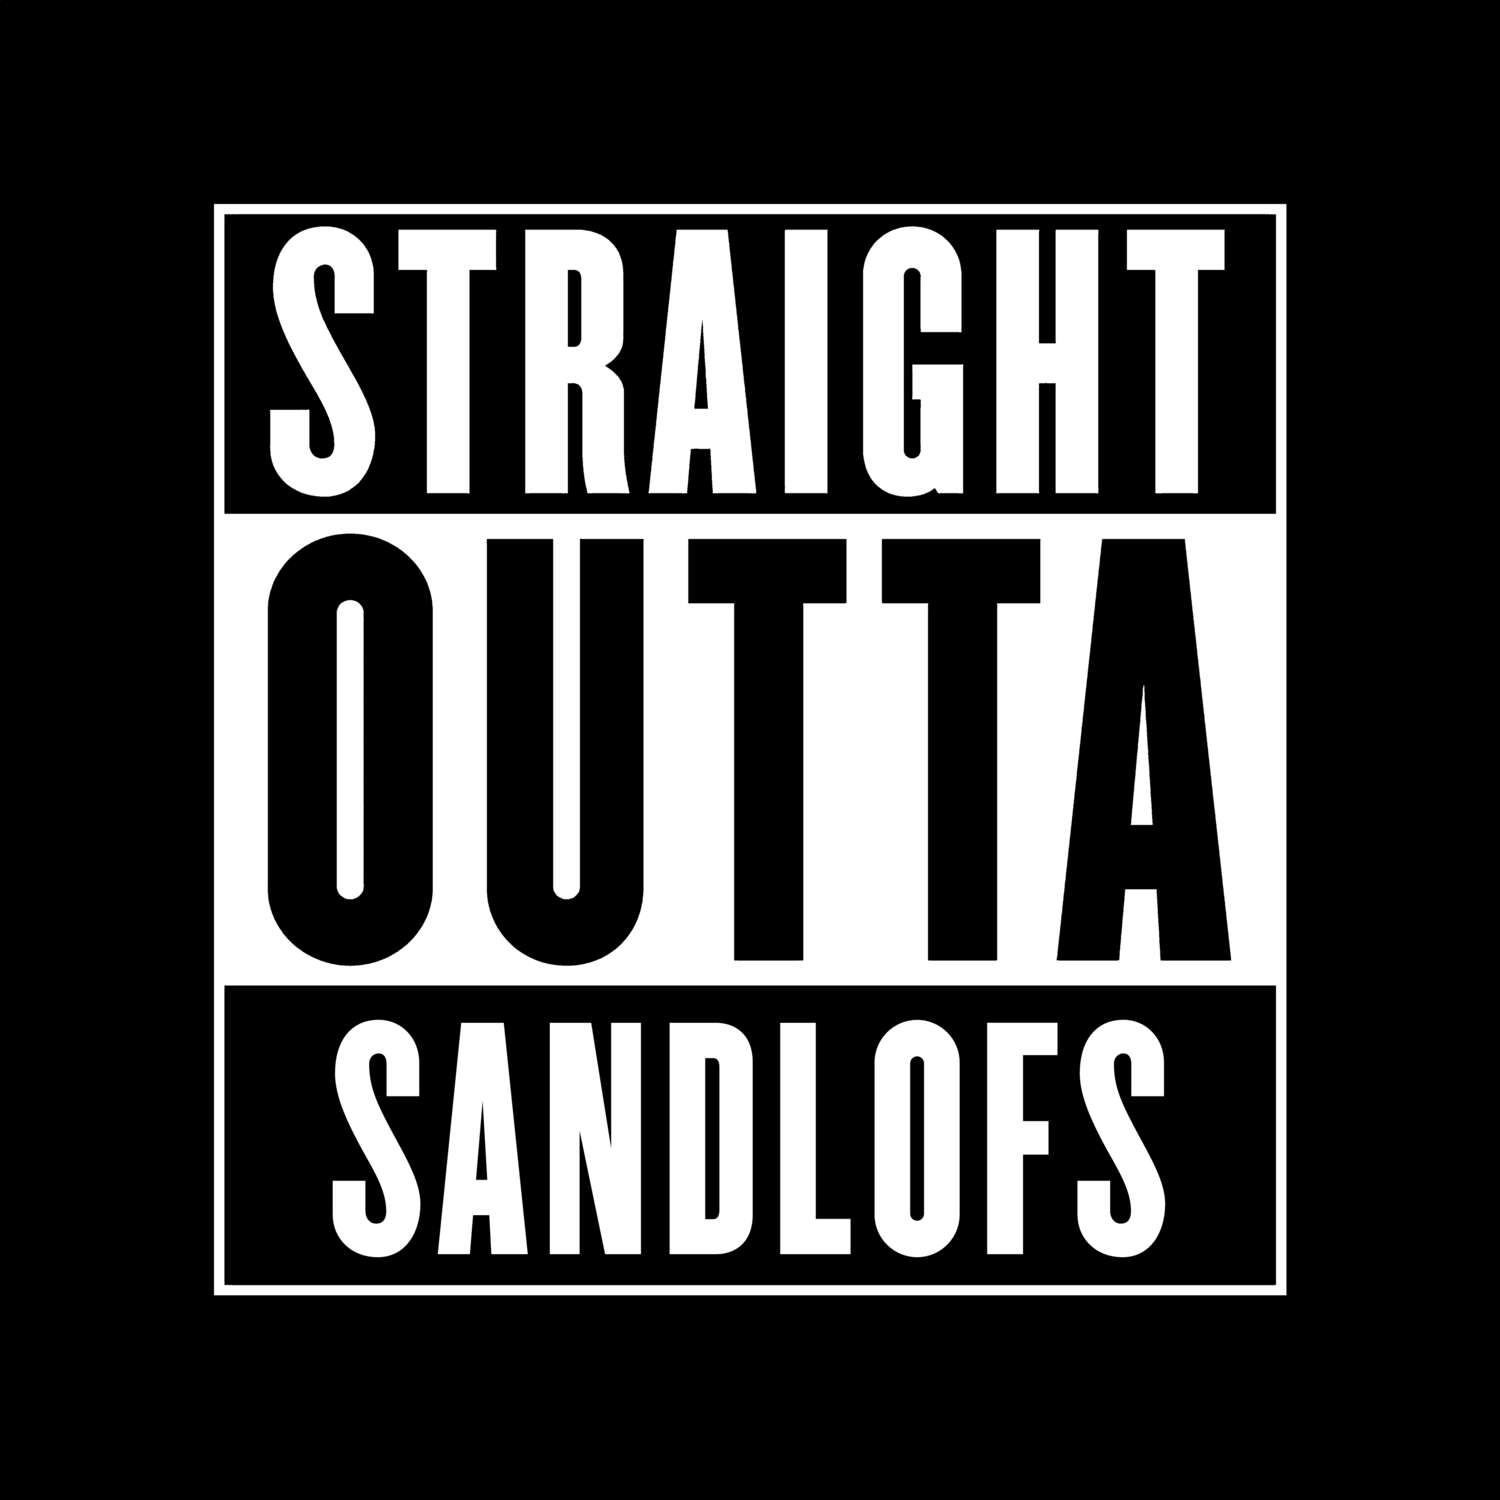 Sandlofs T-Shirt »Straight Outta«